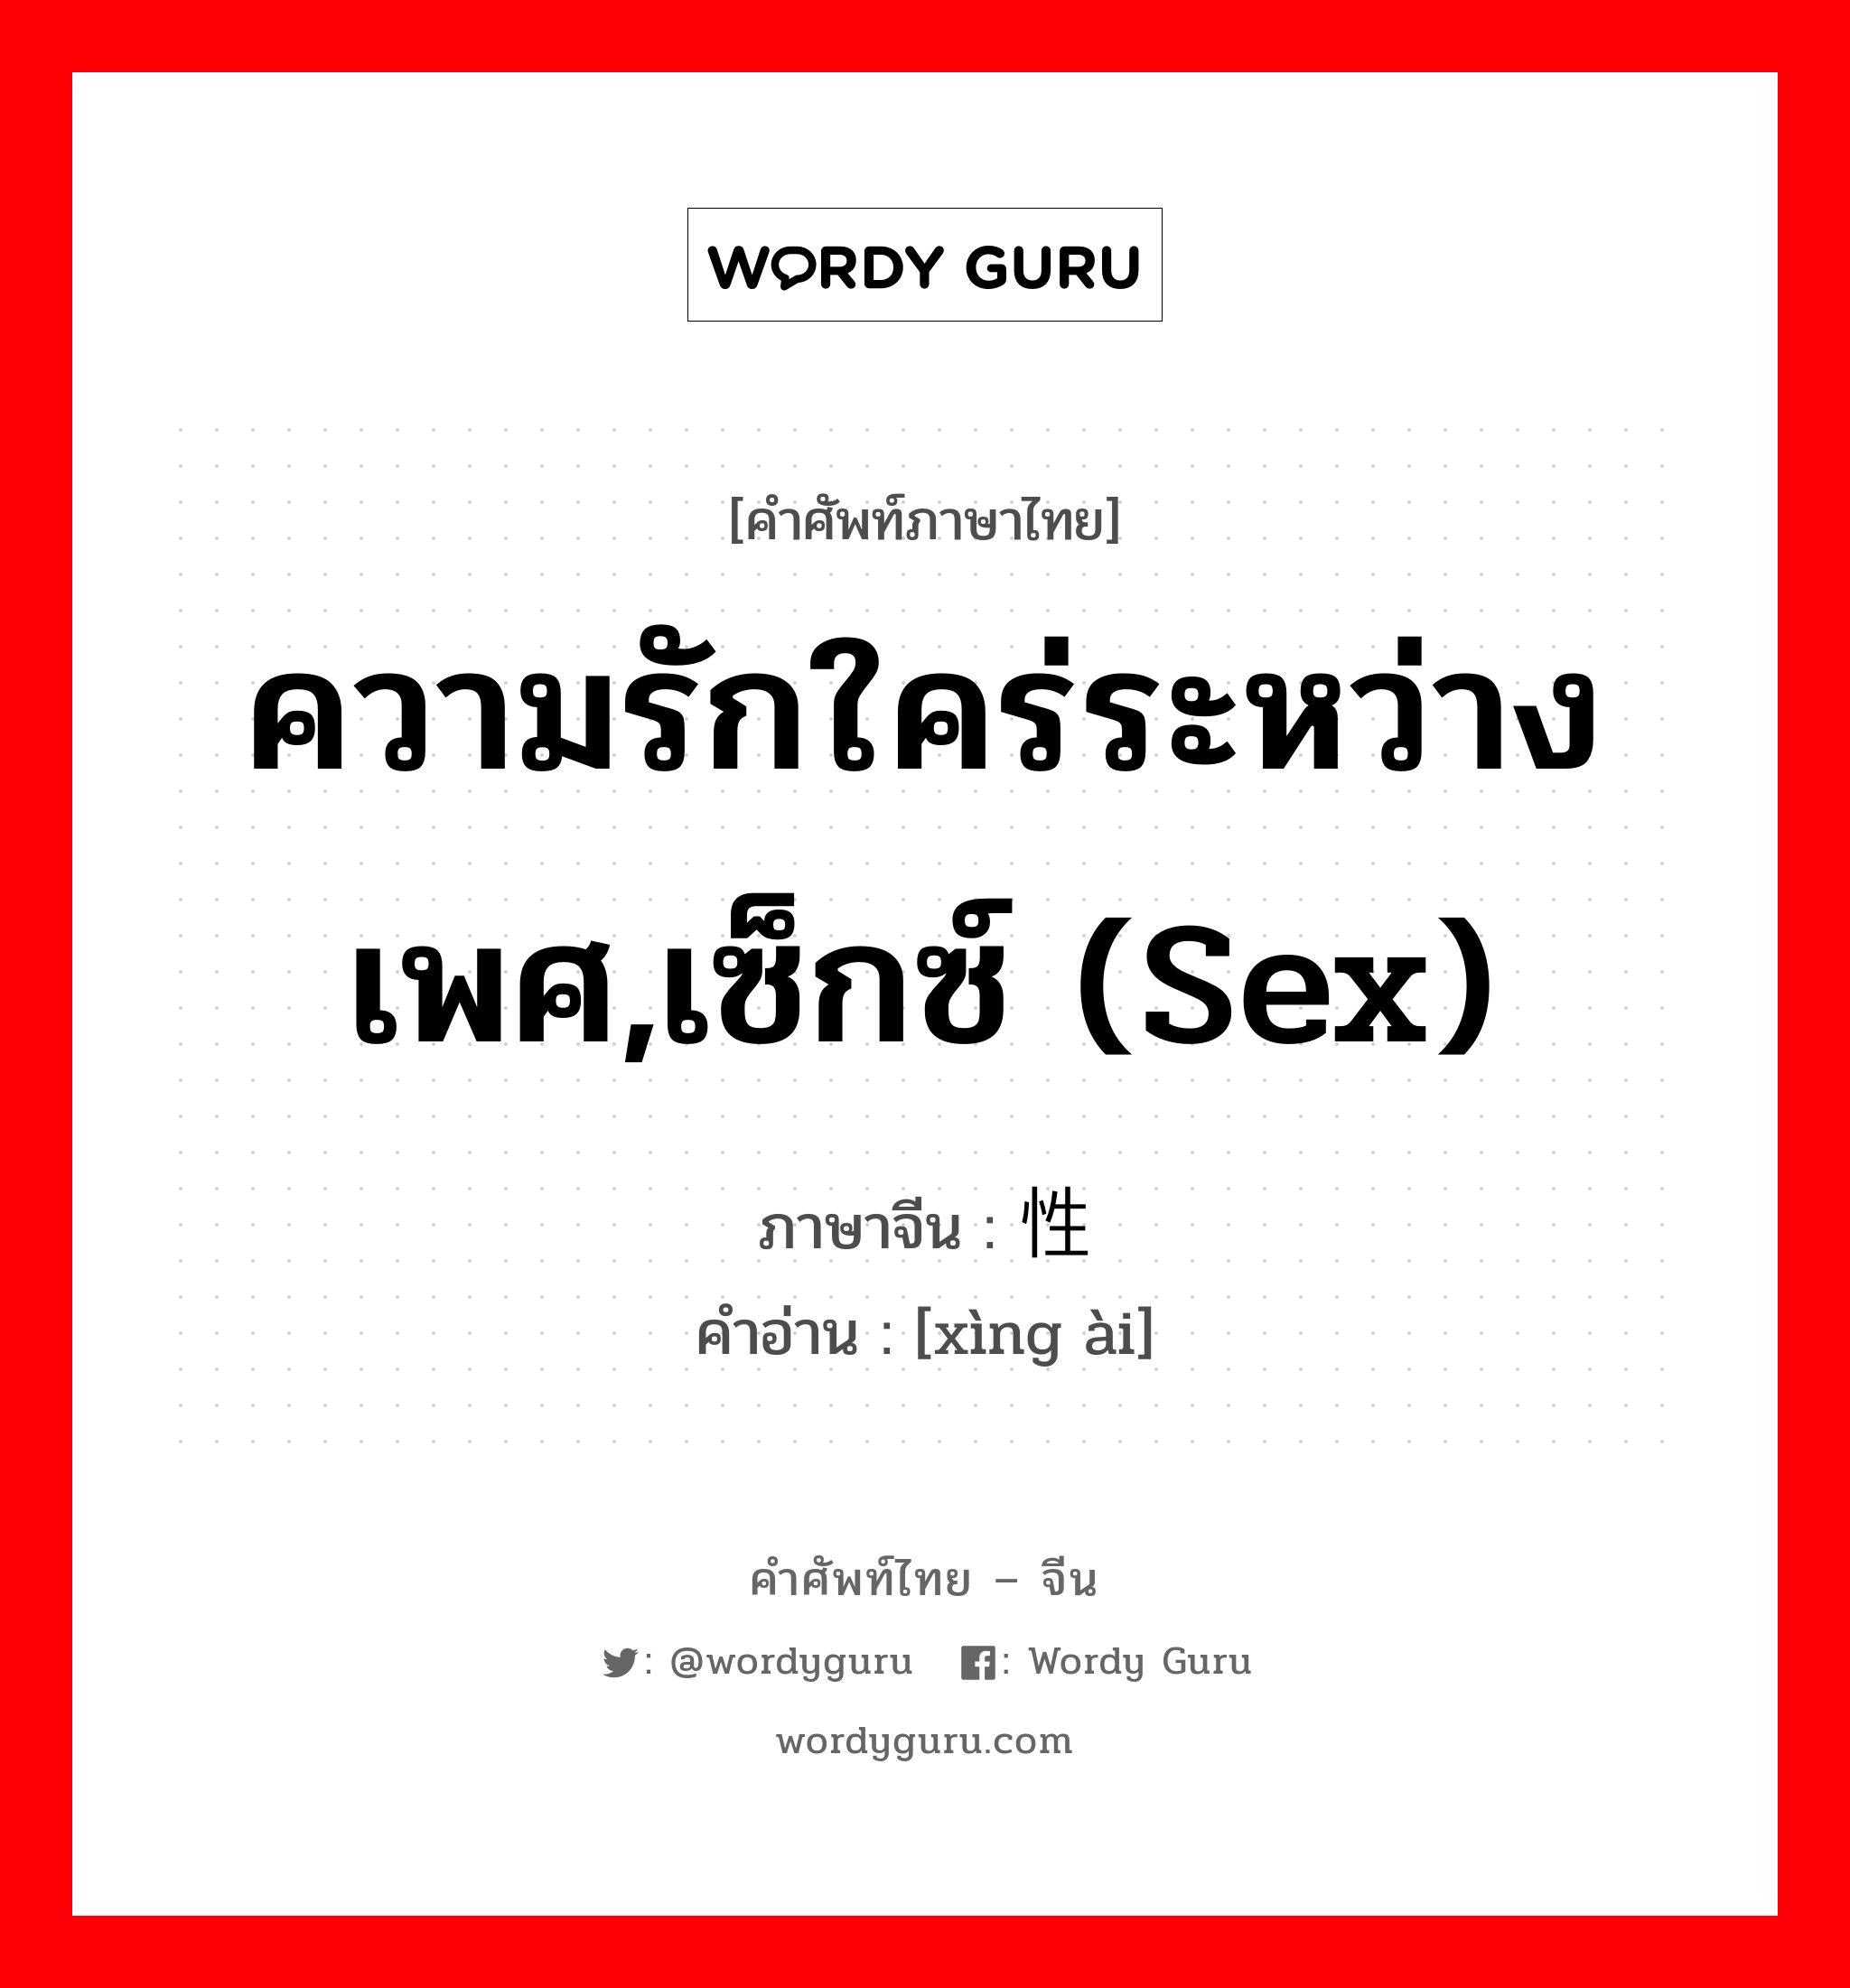 ความรักใคร่ระหว่างเพศ,เซ็กซ์ (sex) ภาษาจีนคืออะไร, คำศัพท์ภาษาไทย - จีน ความรักใคร่ระหว่างเพศ,เซ็กซ์ (sex) ภาษาจีน 性爱 คำอ่าน [xìng ài]